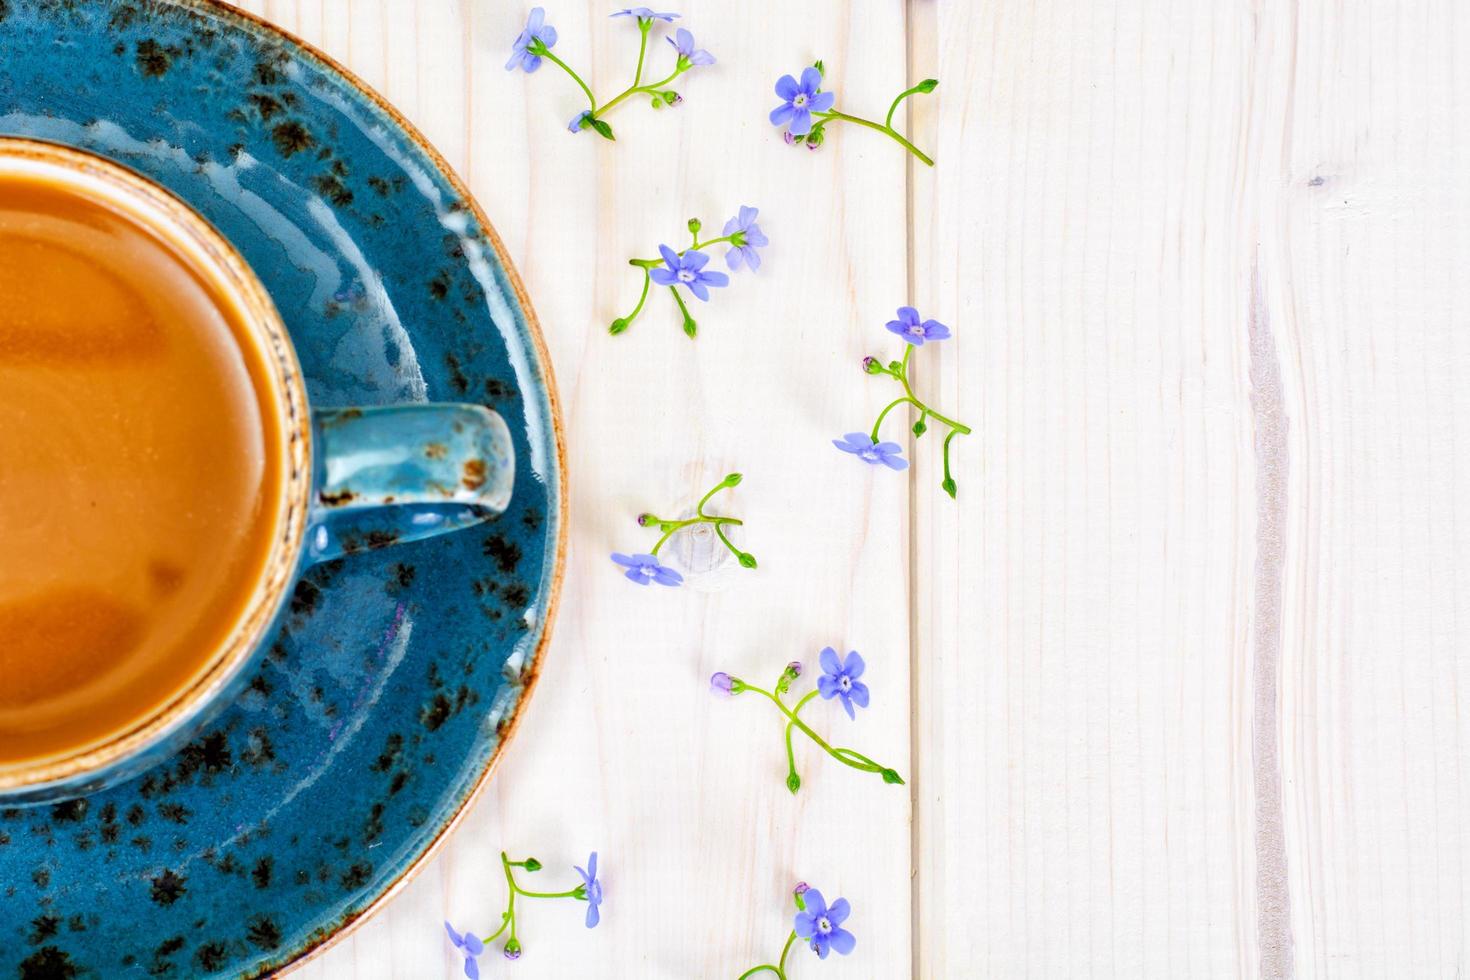 café dans une tasse rétro bleue avec des fleurs photo